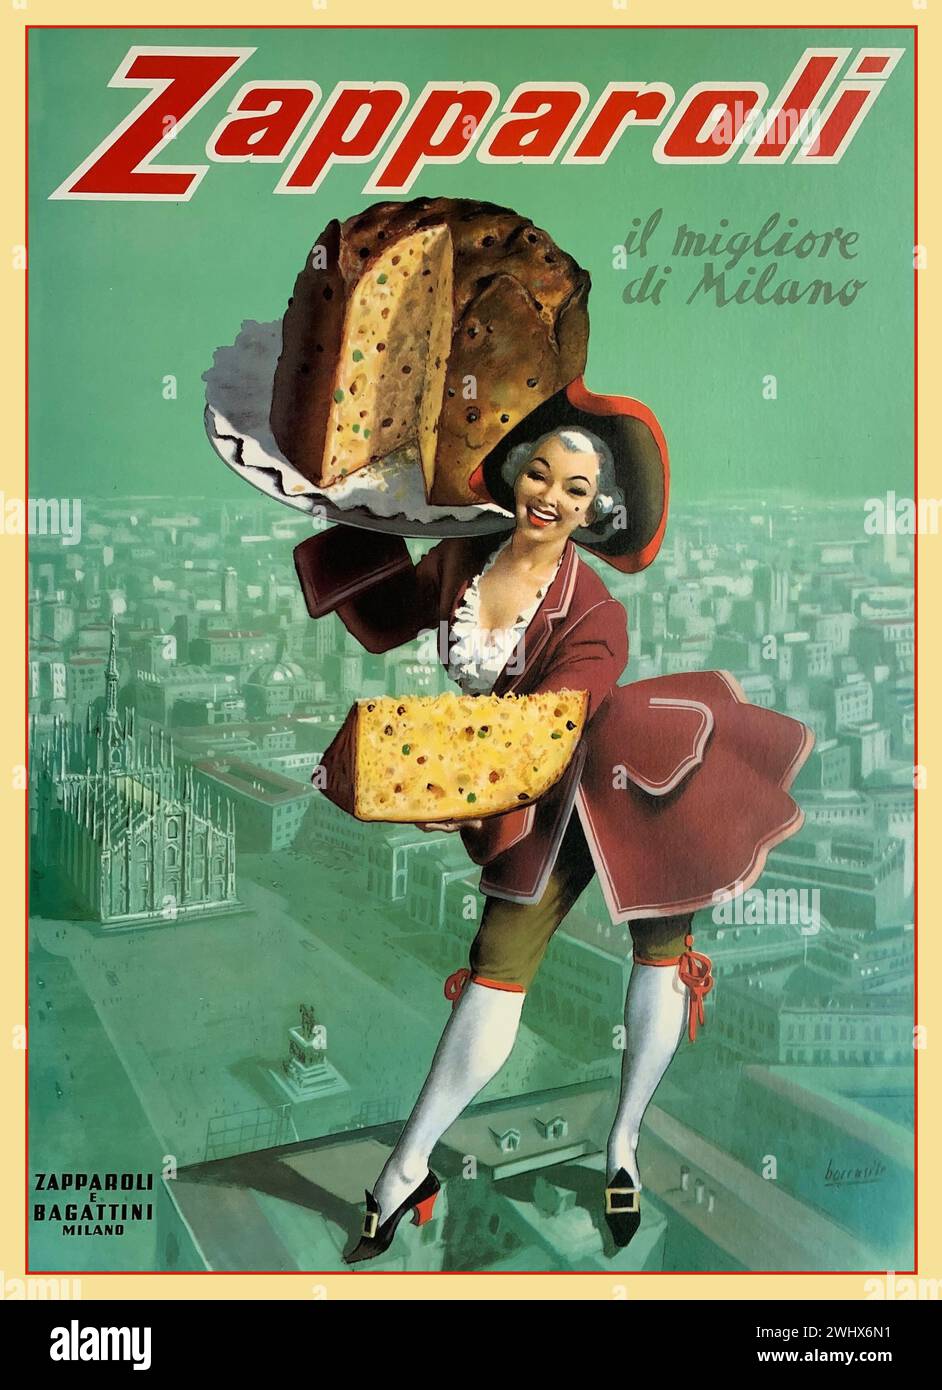 Affiche de gâteau italien vintage années 1930 'ZAPPOROLI' 'le meilleur de Milan' Milan Italie. Avec une dame en manteau et chapeau du 17ème siècle présentant ce gâteau traditionnel de Zapporoli et Bagattini avec la ville de Milan illustré derrière Milan Milan ITALIE Banque D'Images